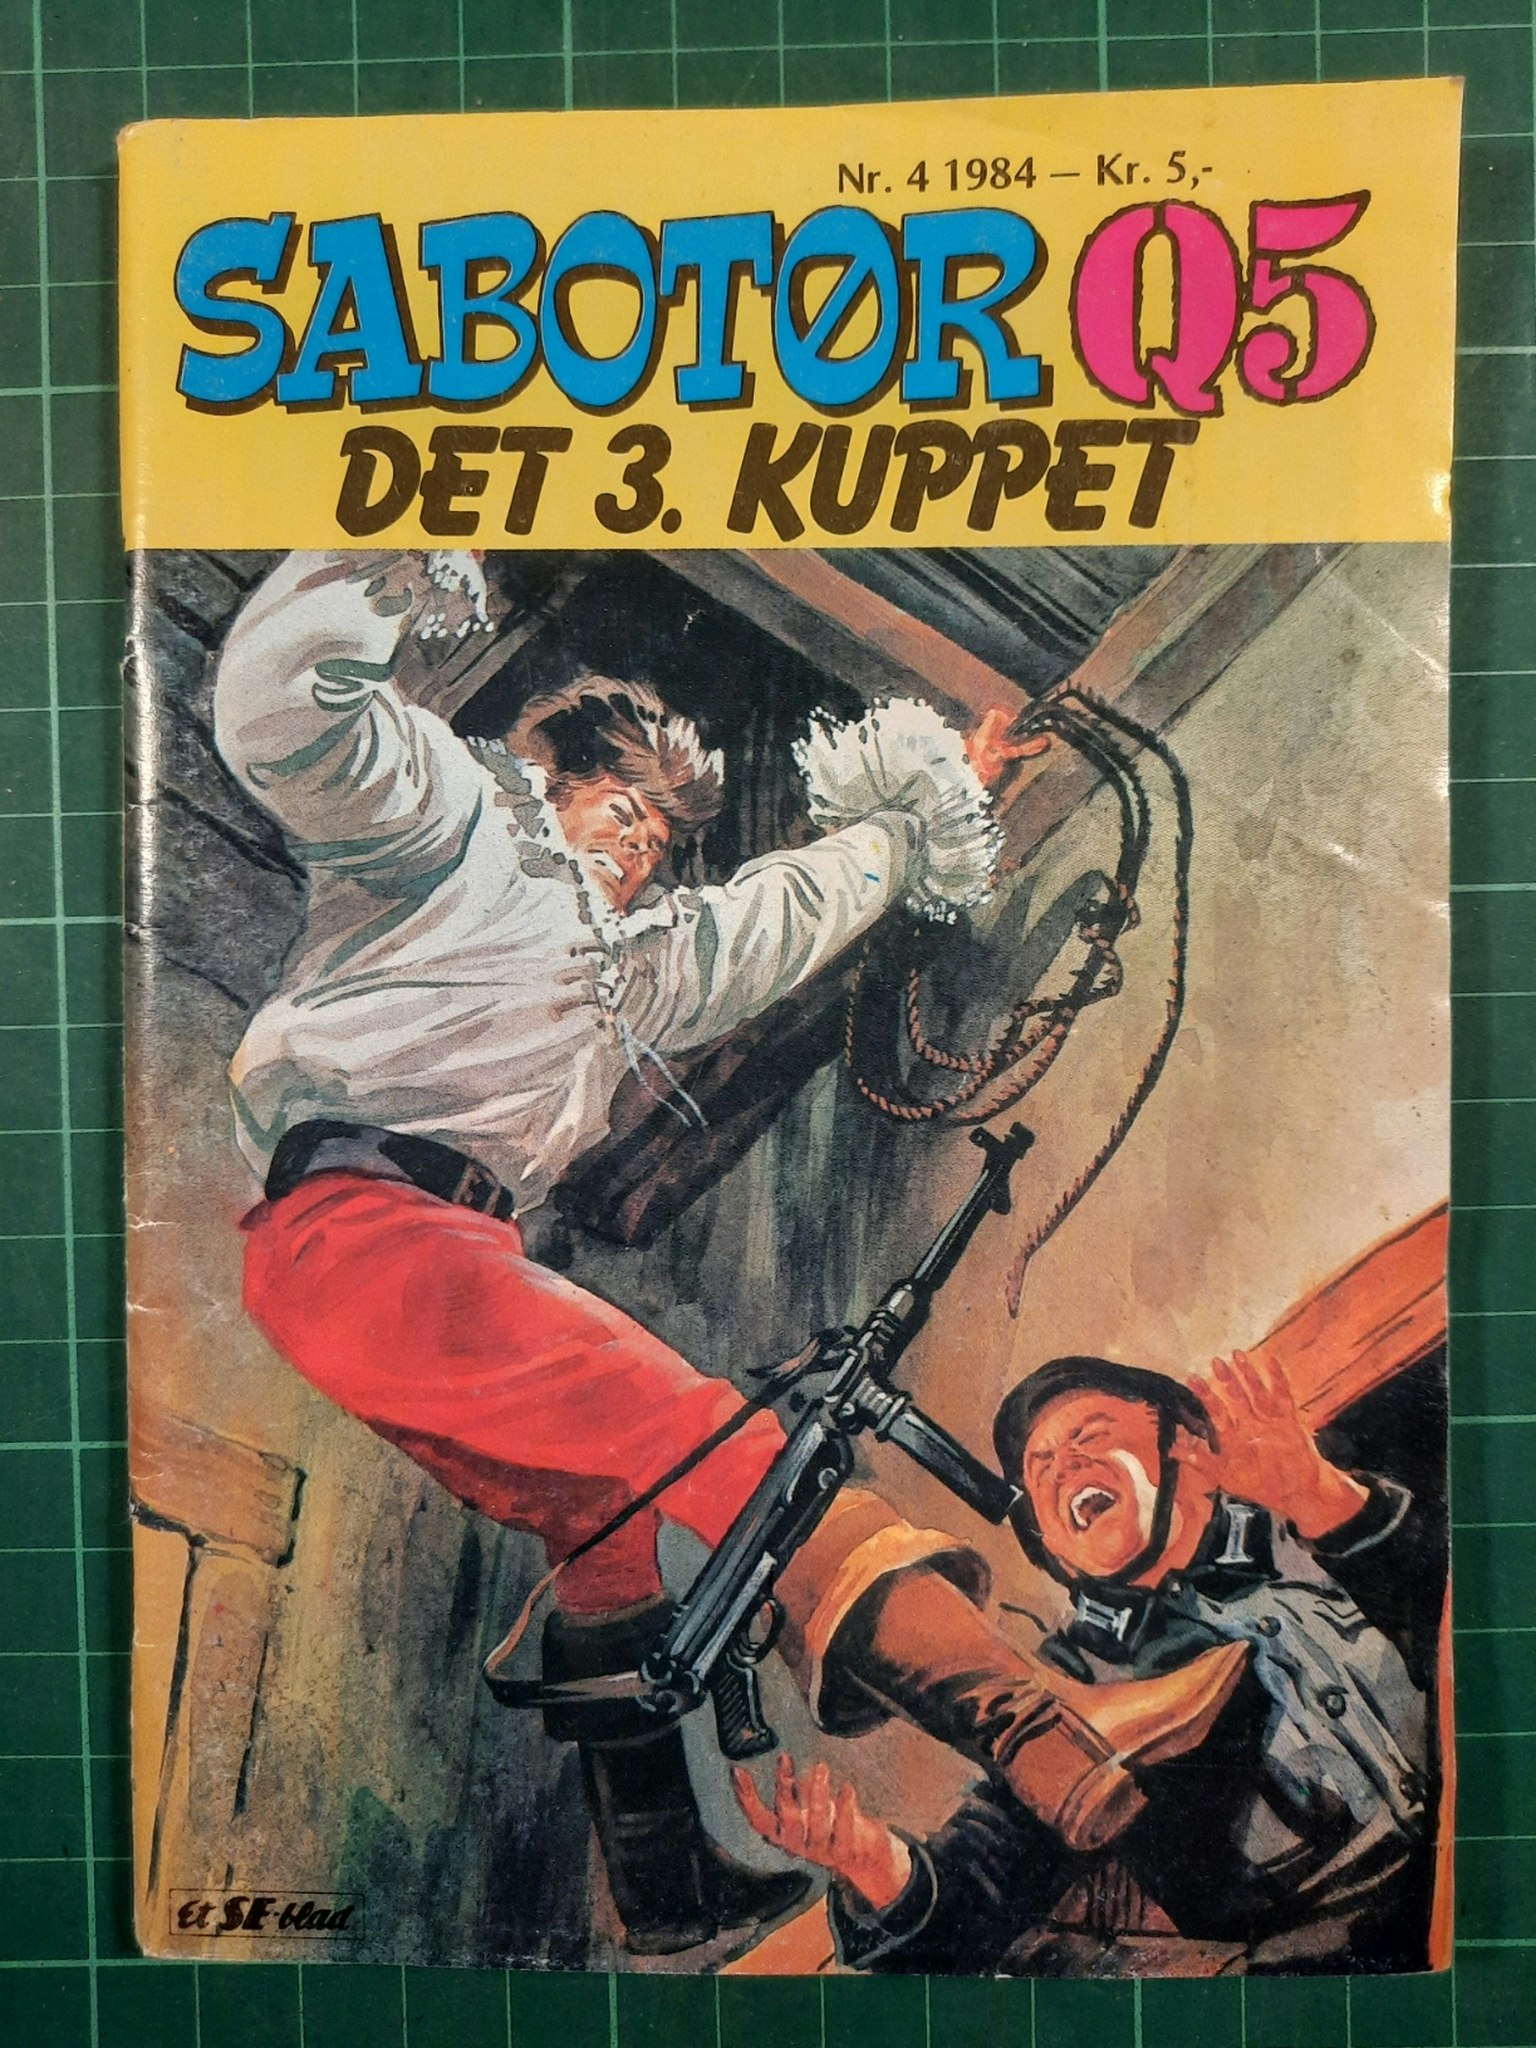 Sabotør Q5 1984 - 04